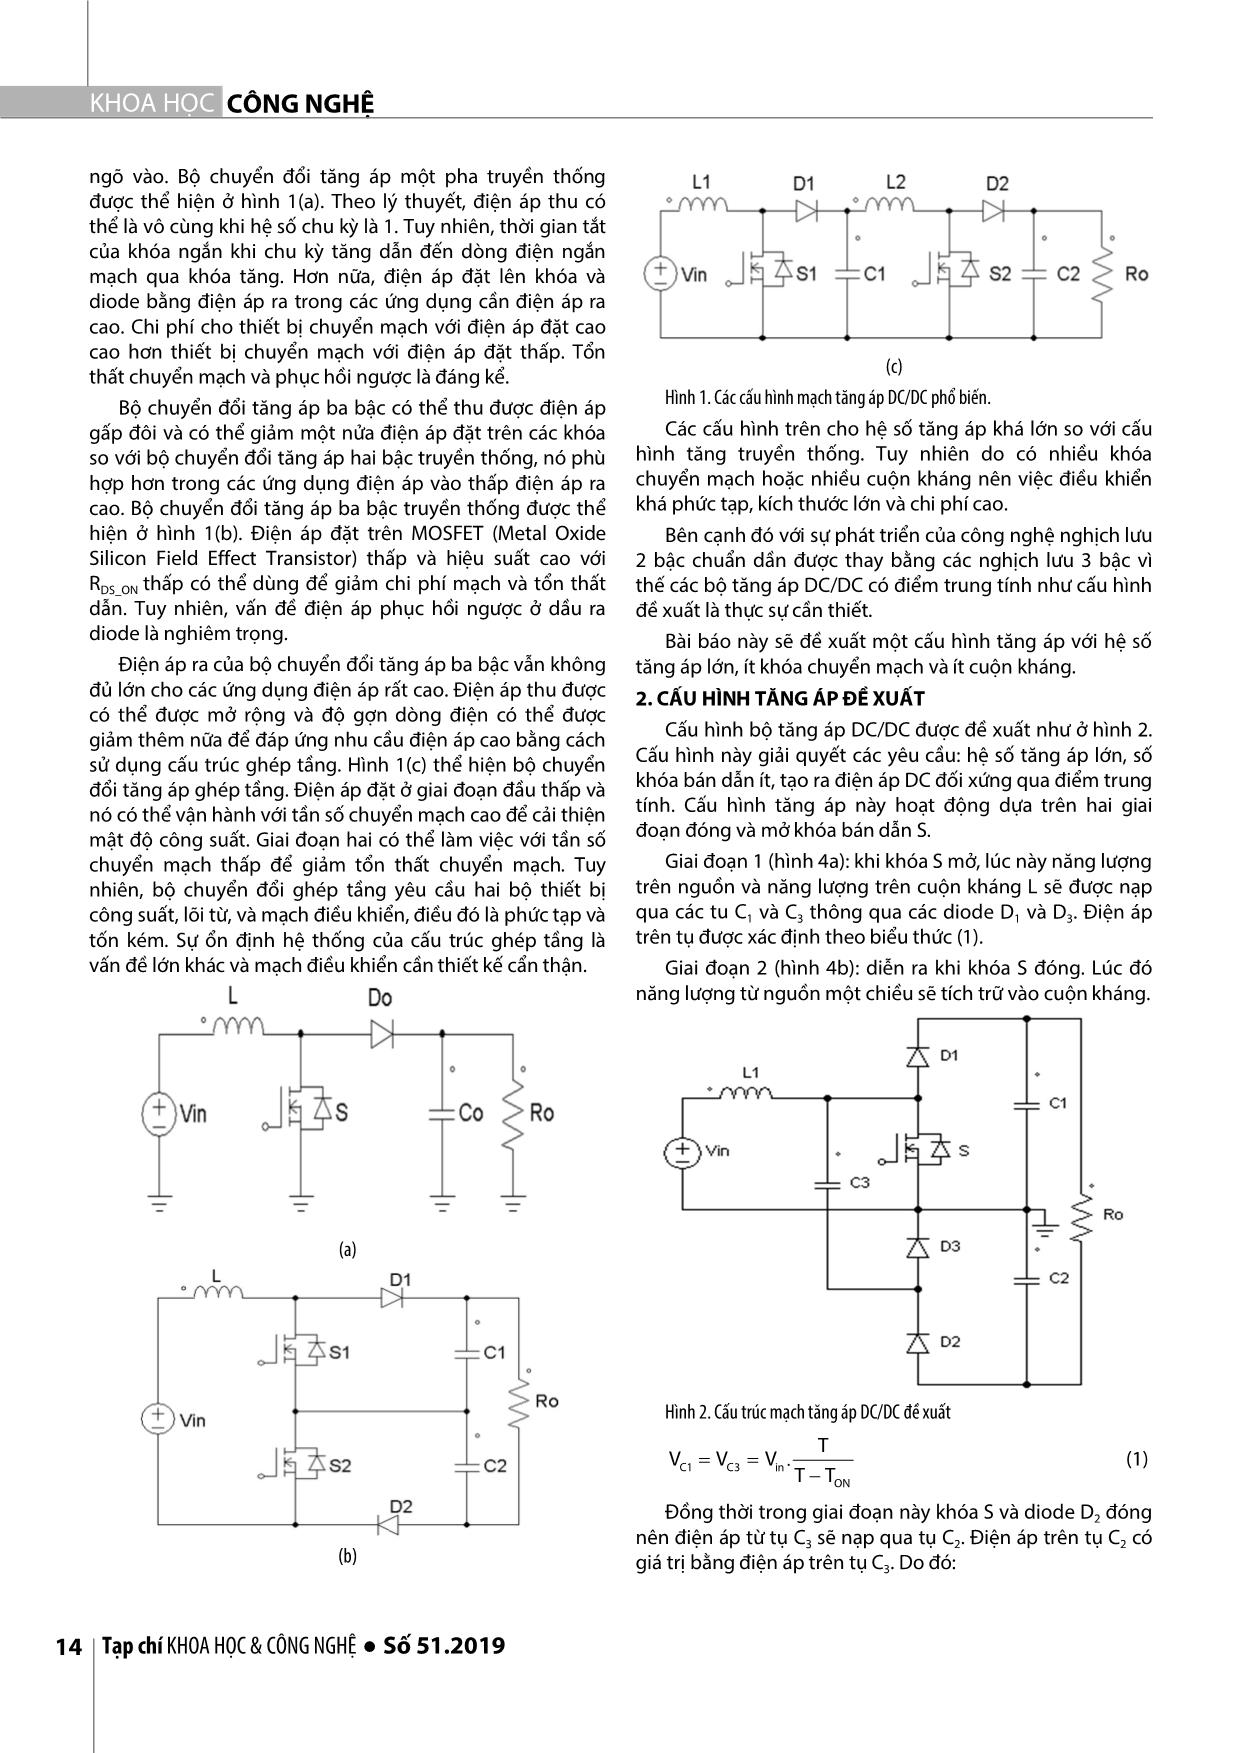 Nghiên cứu cấu hình tăng áp DC/DC có điểm trung tính với nguồn điện áp một chiều trang 2